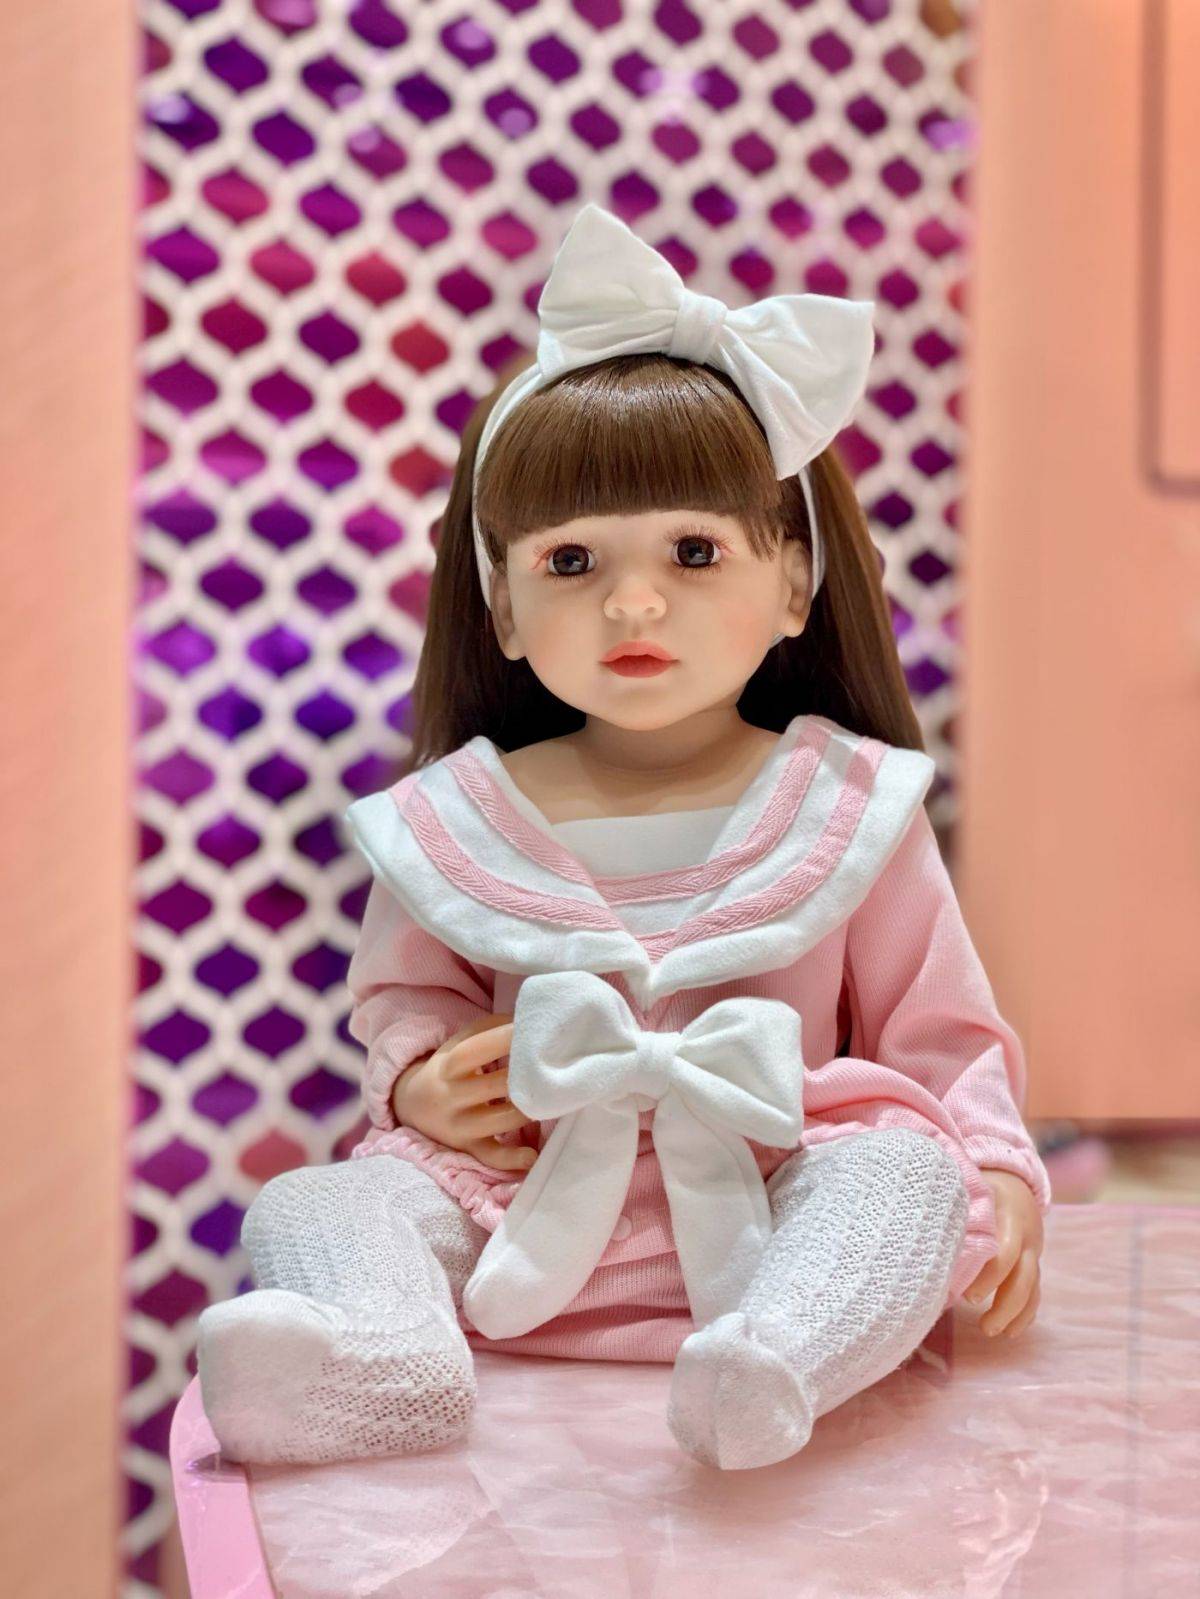 Anak patung bayi yang dilahirkan semula silikon anak patung bayi lembut yang comel fesyen boneka bayi yang dilahirkan semula 55cm mainan bayi untuk kanak-kanak perempuan (10)